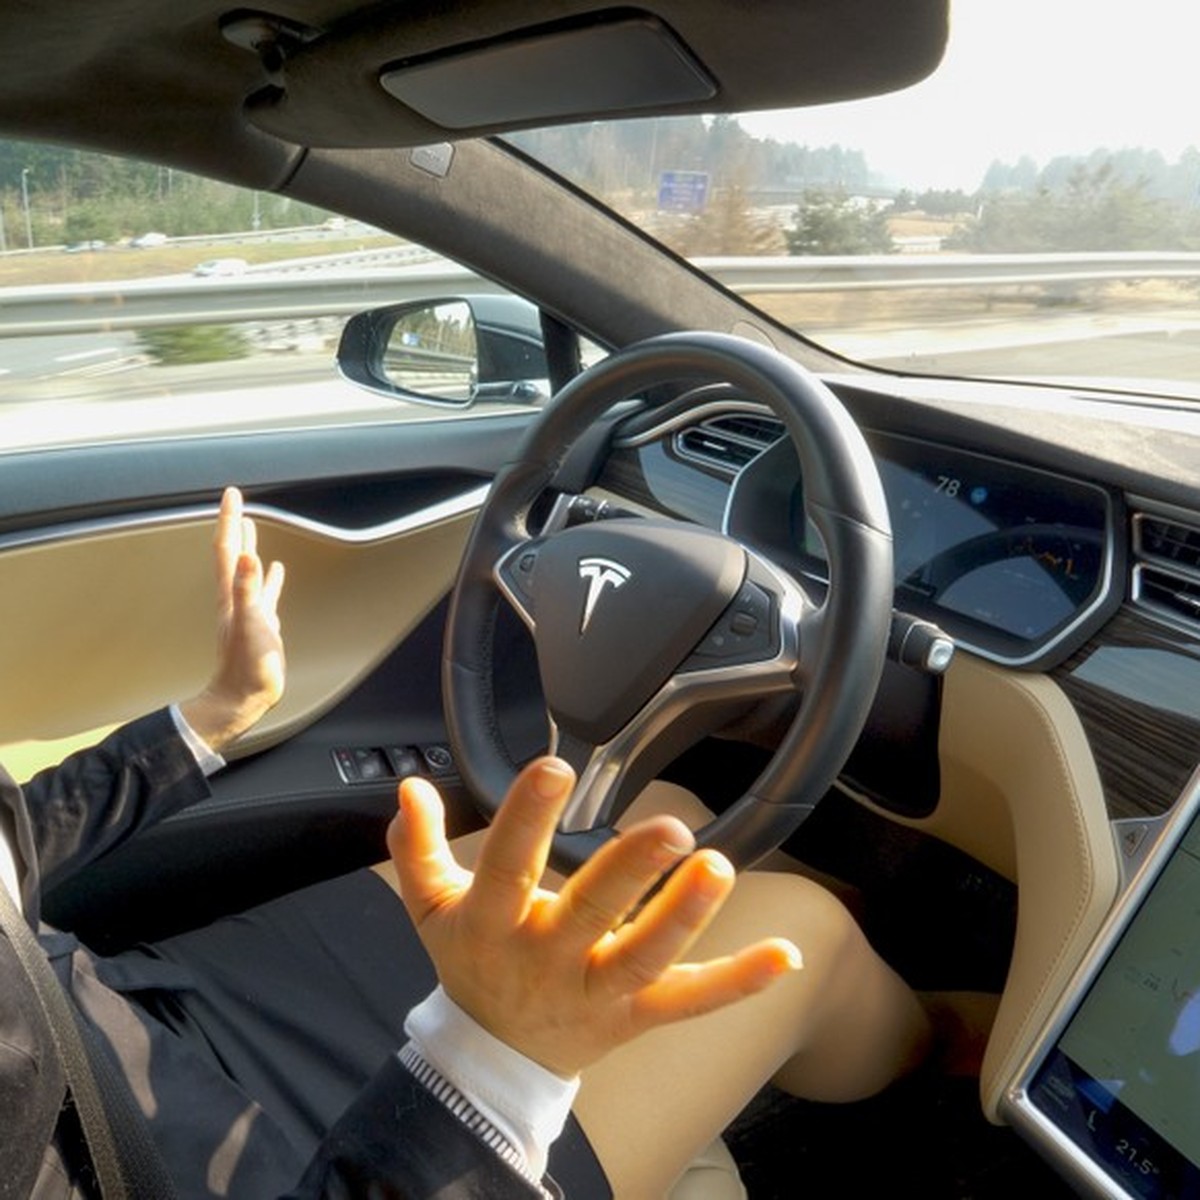 Auto : bientôt des voitures complètement autonomes sur les routes ?